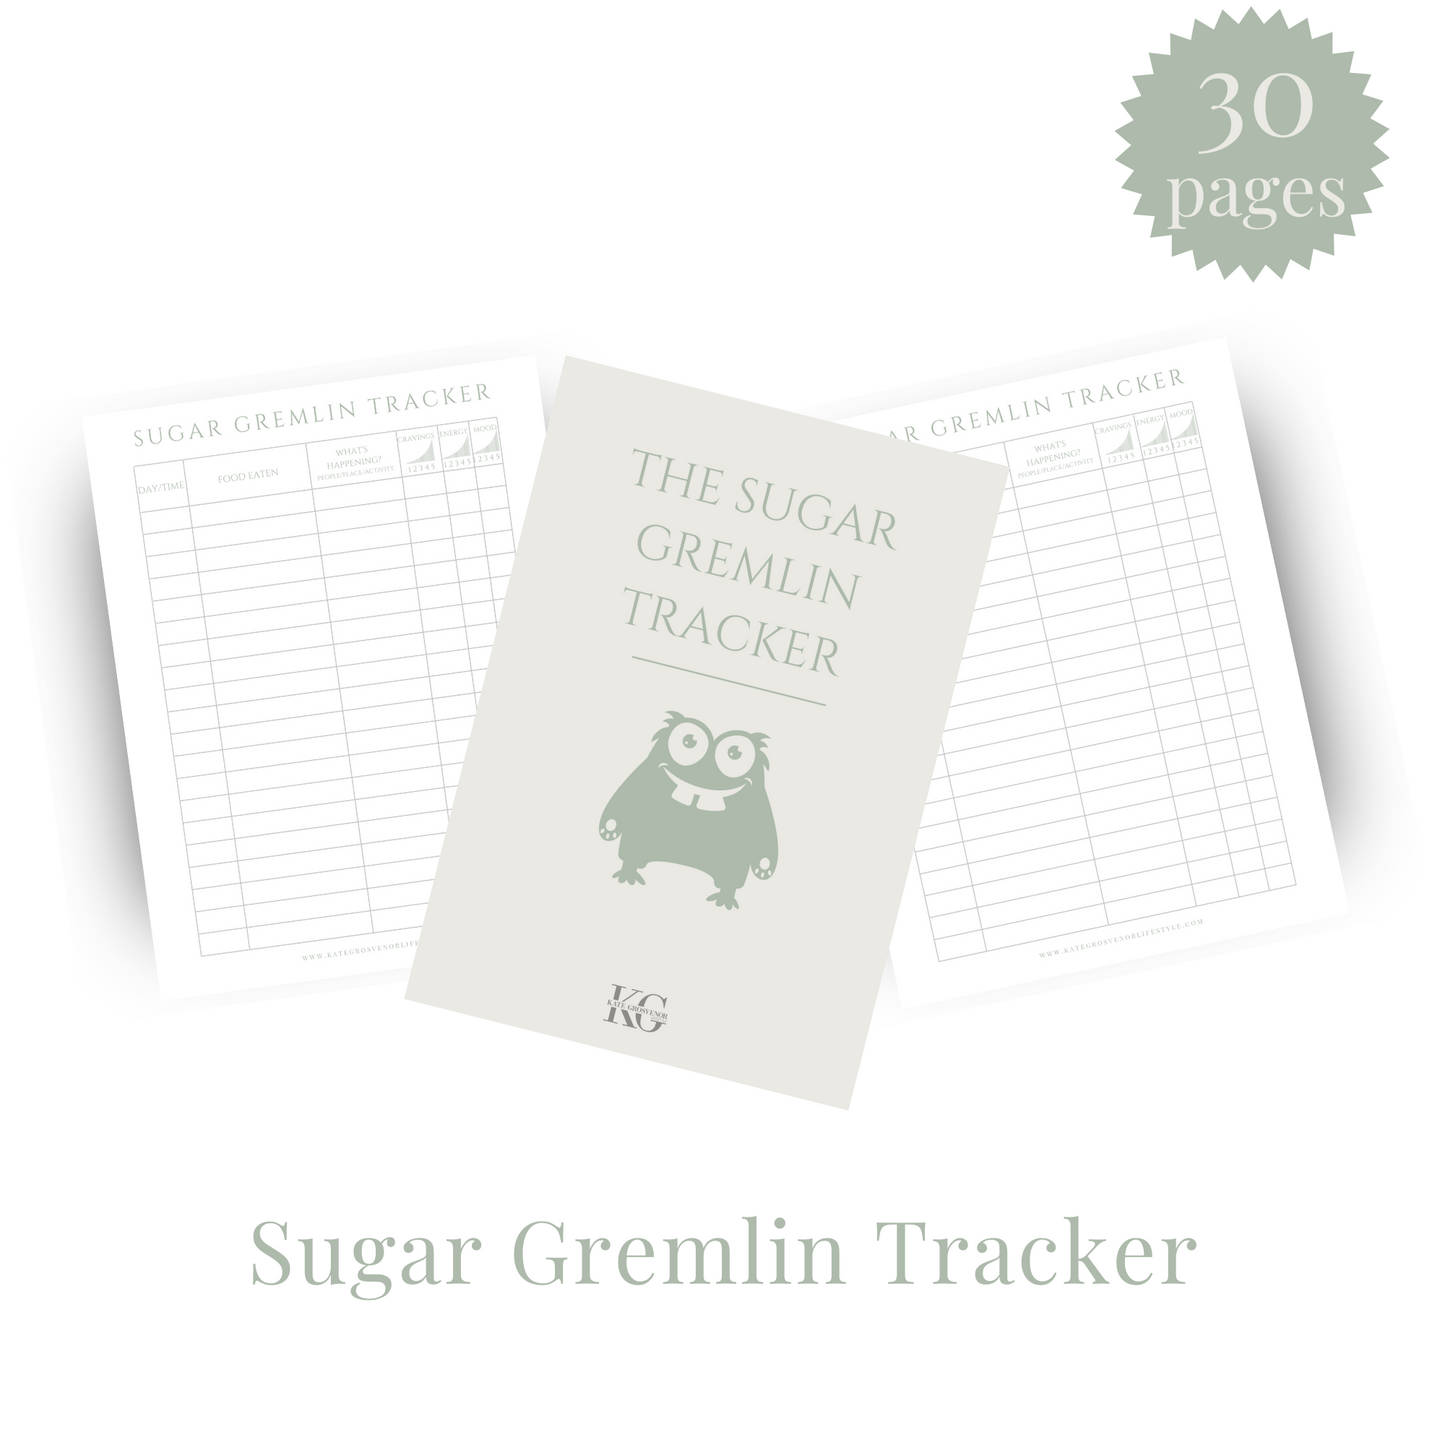 The Sugar Gremlin Tracker